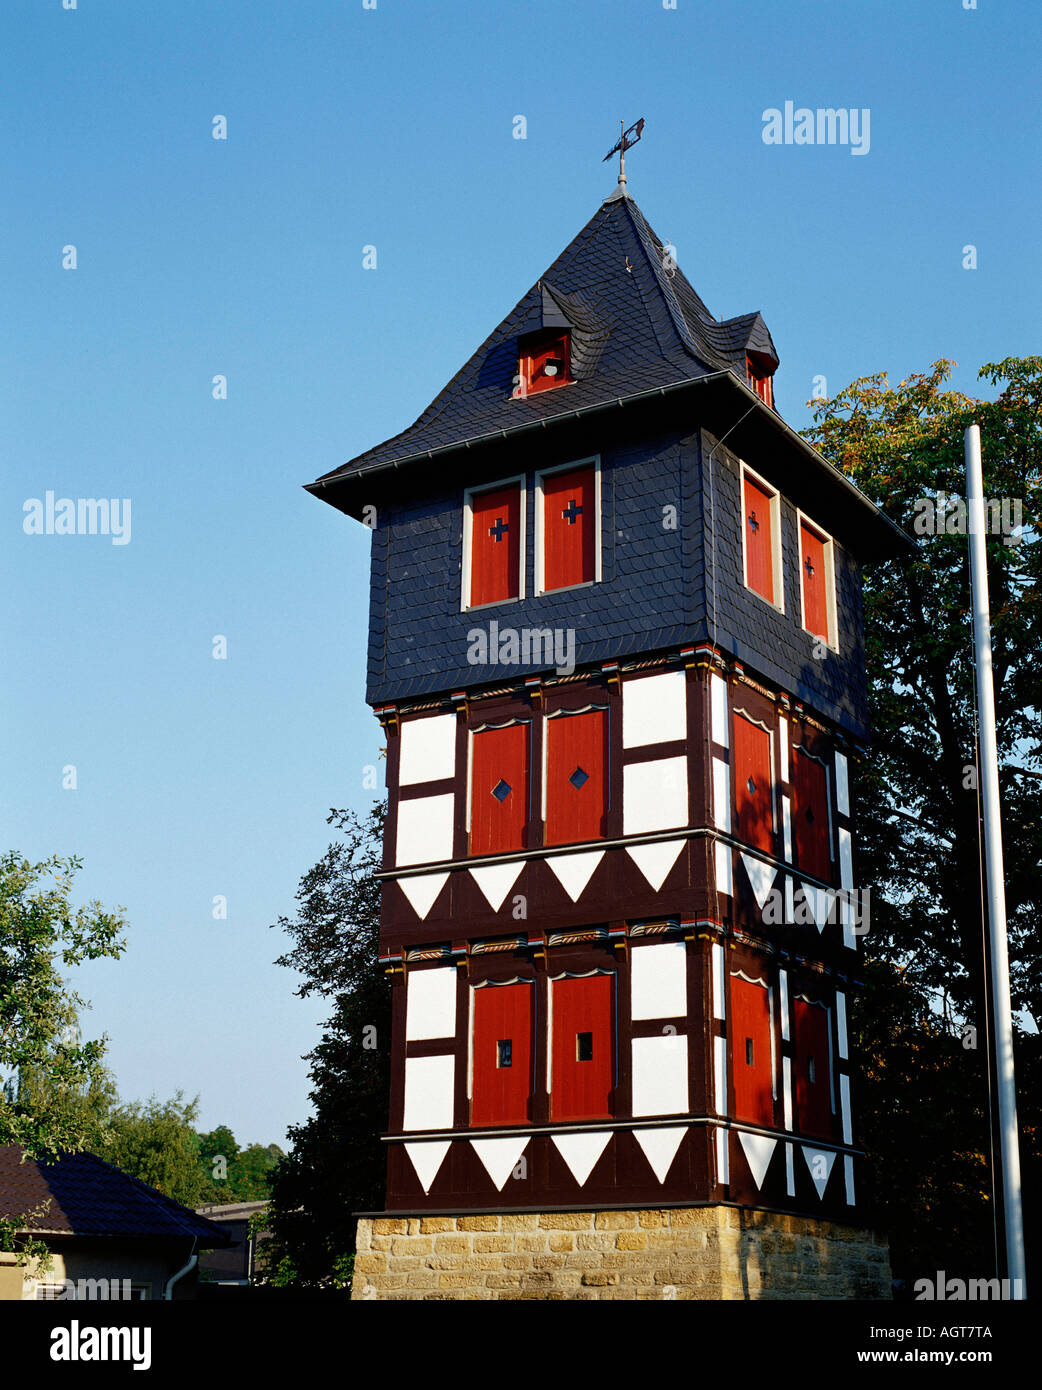 Timber-framed tower / Goslar Stock Photo